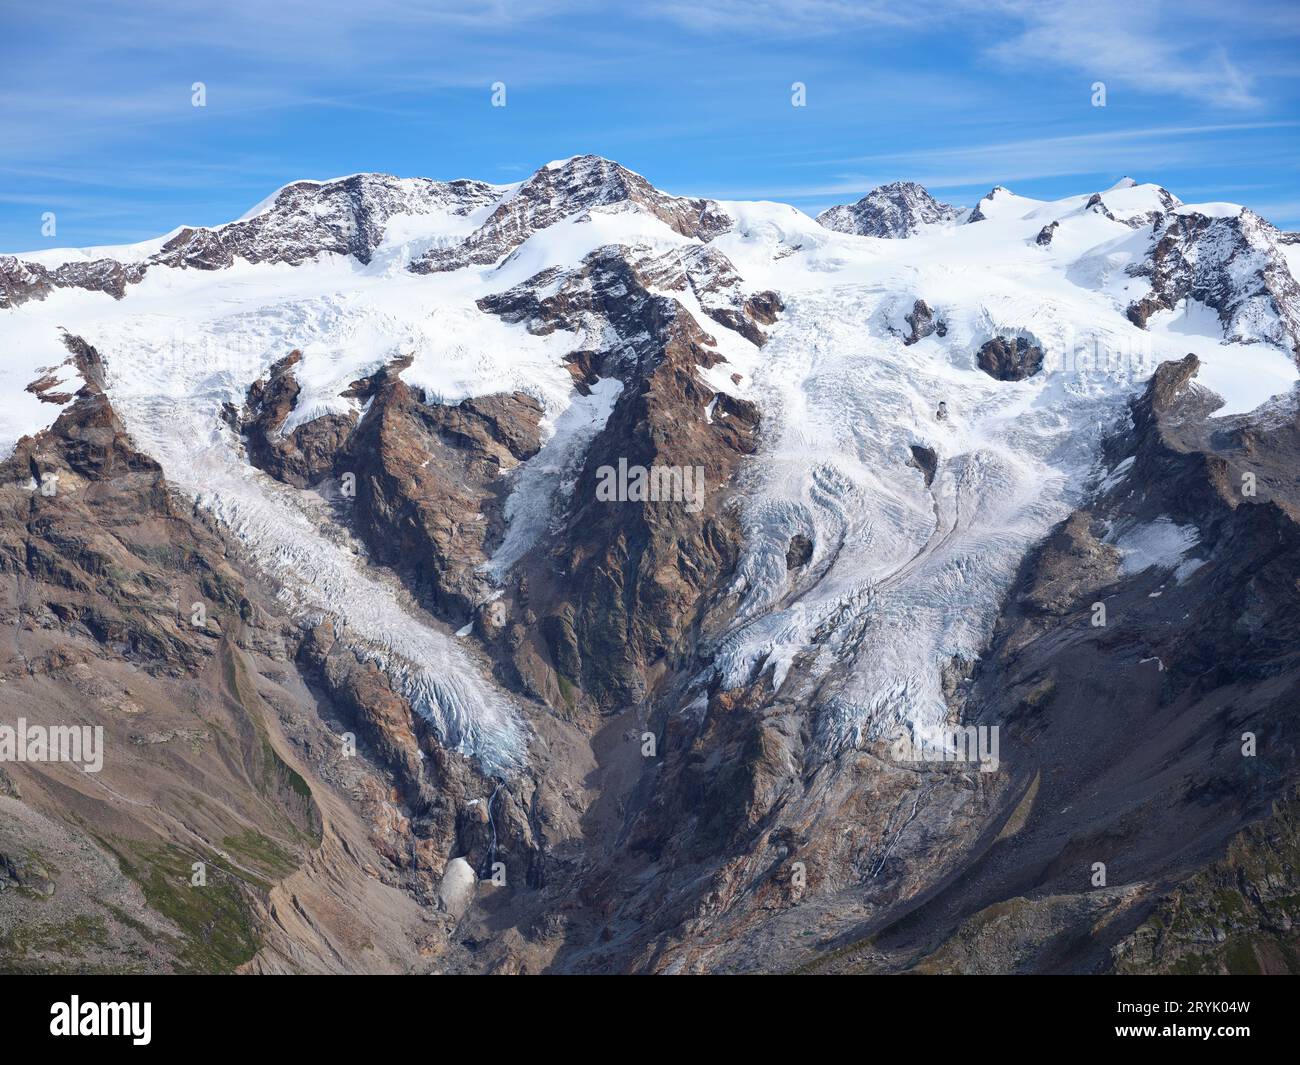 VUE AÉRIENNE. Côté sud et italien du massif du Monte Rosa avec le glacier de la Lys dans la haute vallée de la Lys. Vallée d'Aoste, Italie. Banque D'Images